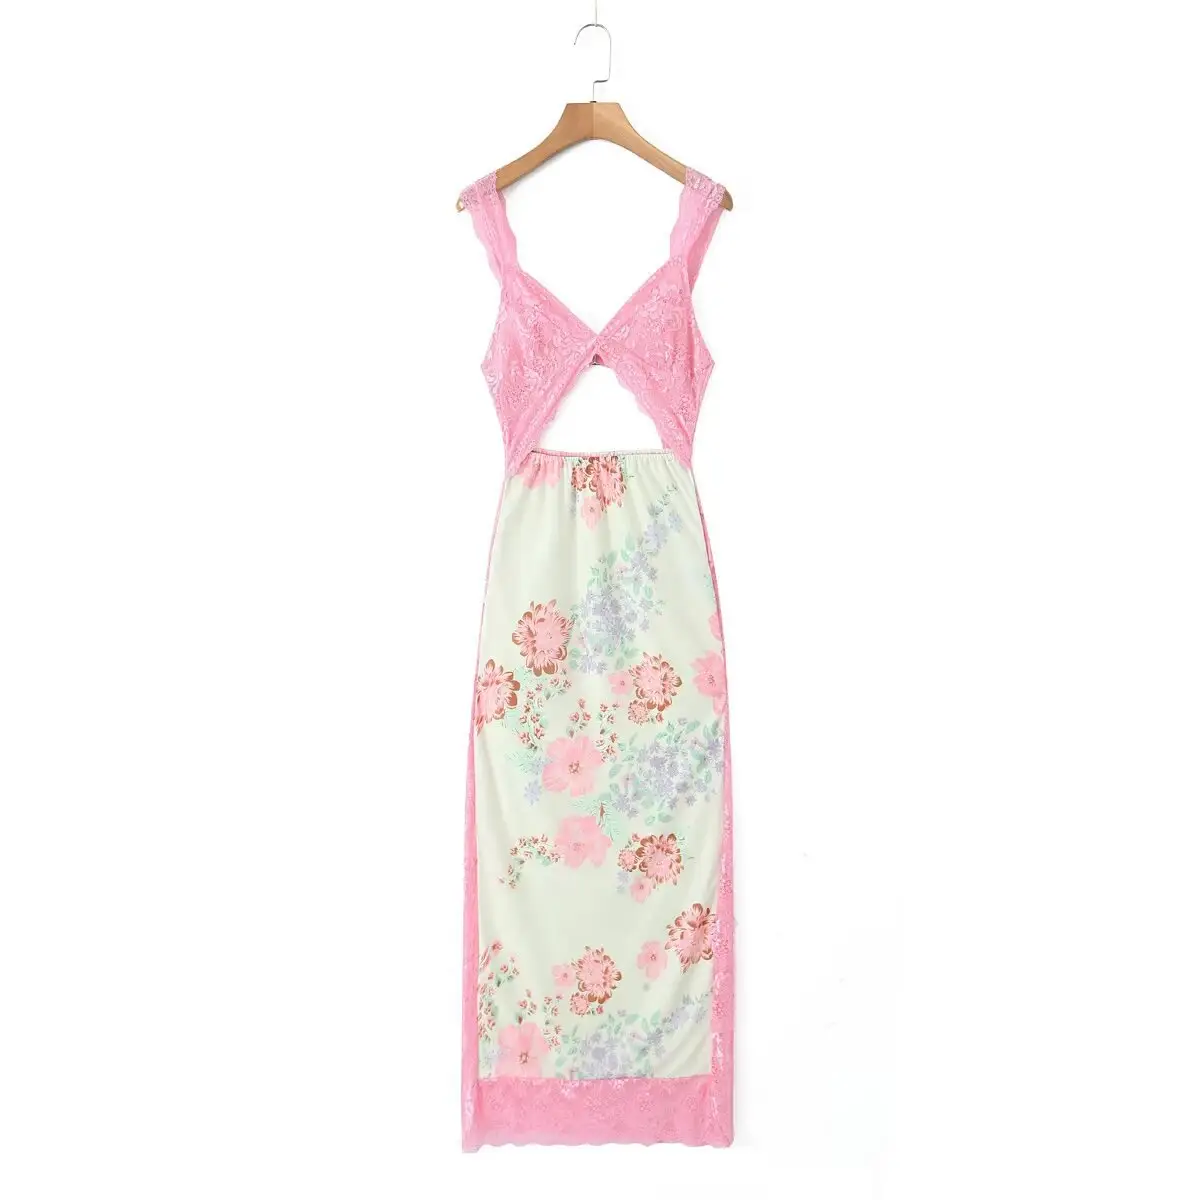 שמלה ארוכה נשית הכוללת תחרה ורודה ועיצוב פרחים צבעוני בגדים בגזרה דקיקה שמלת קיץ מזדמנת